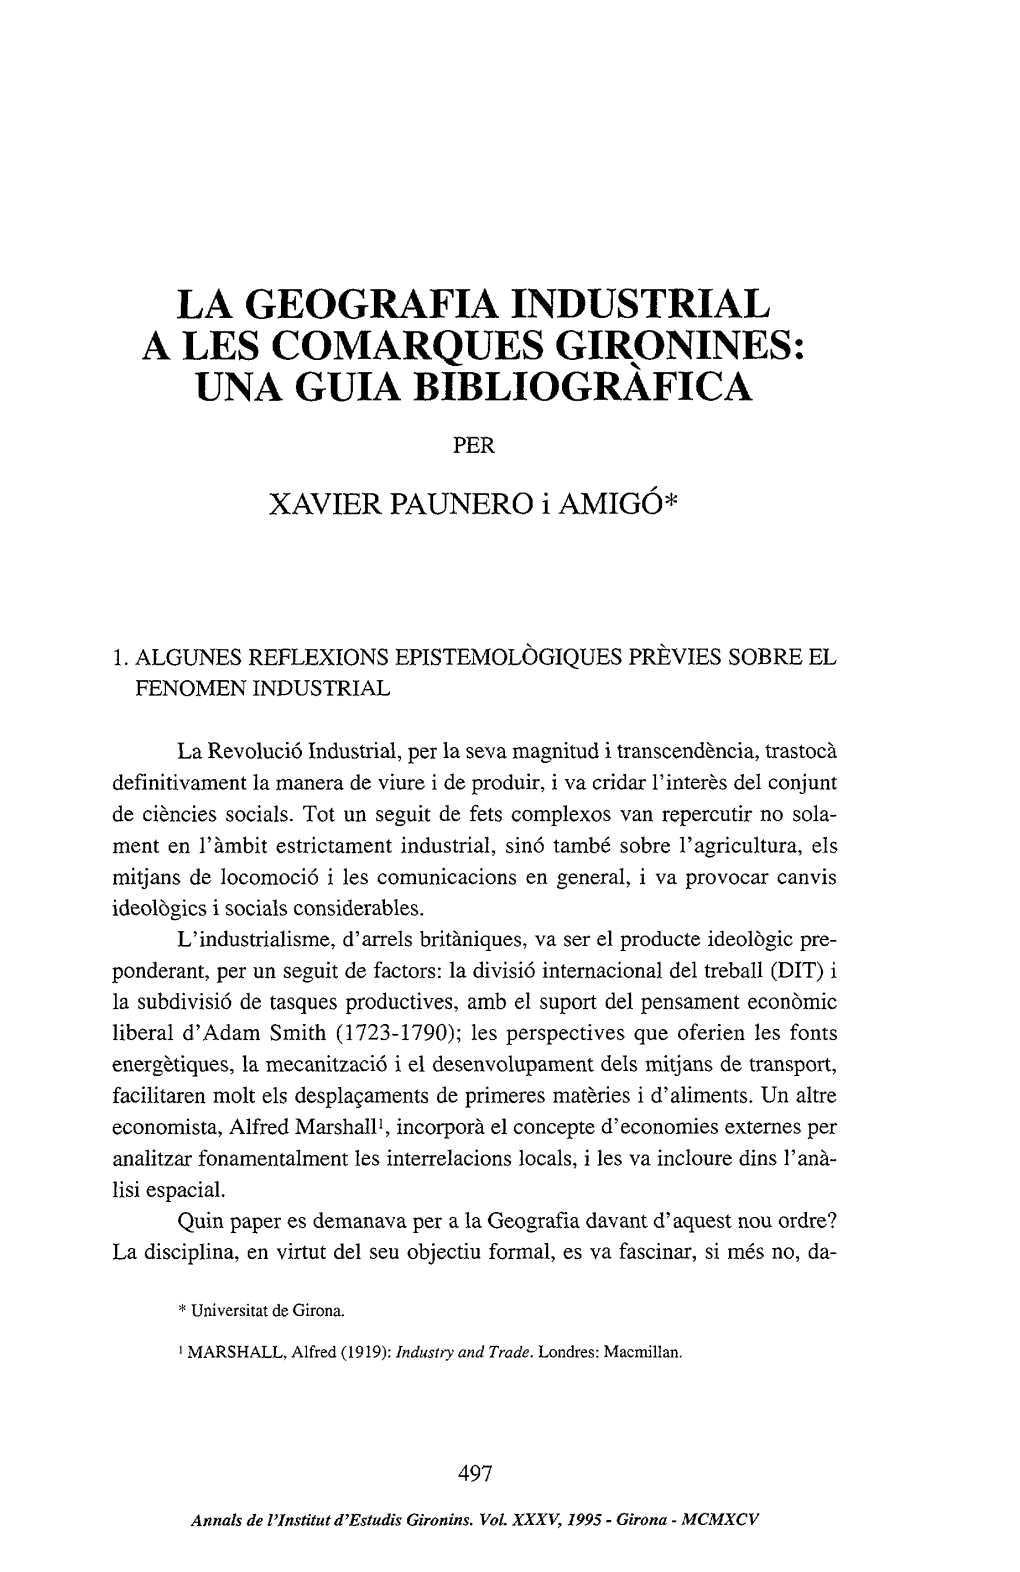 La Geografia Industrial a Les Comarques Gironines: Una Guia Bibliogràfica